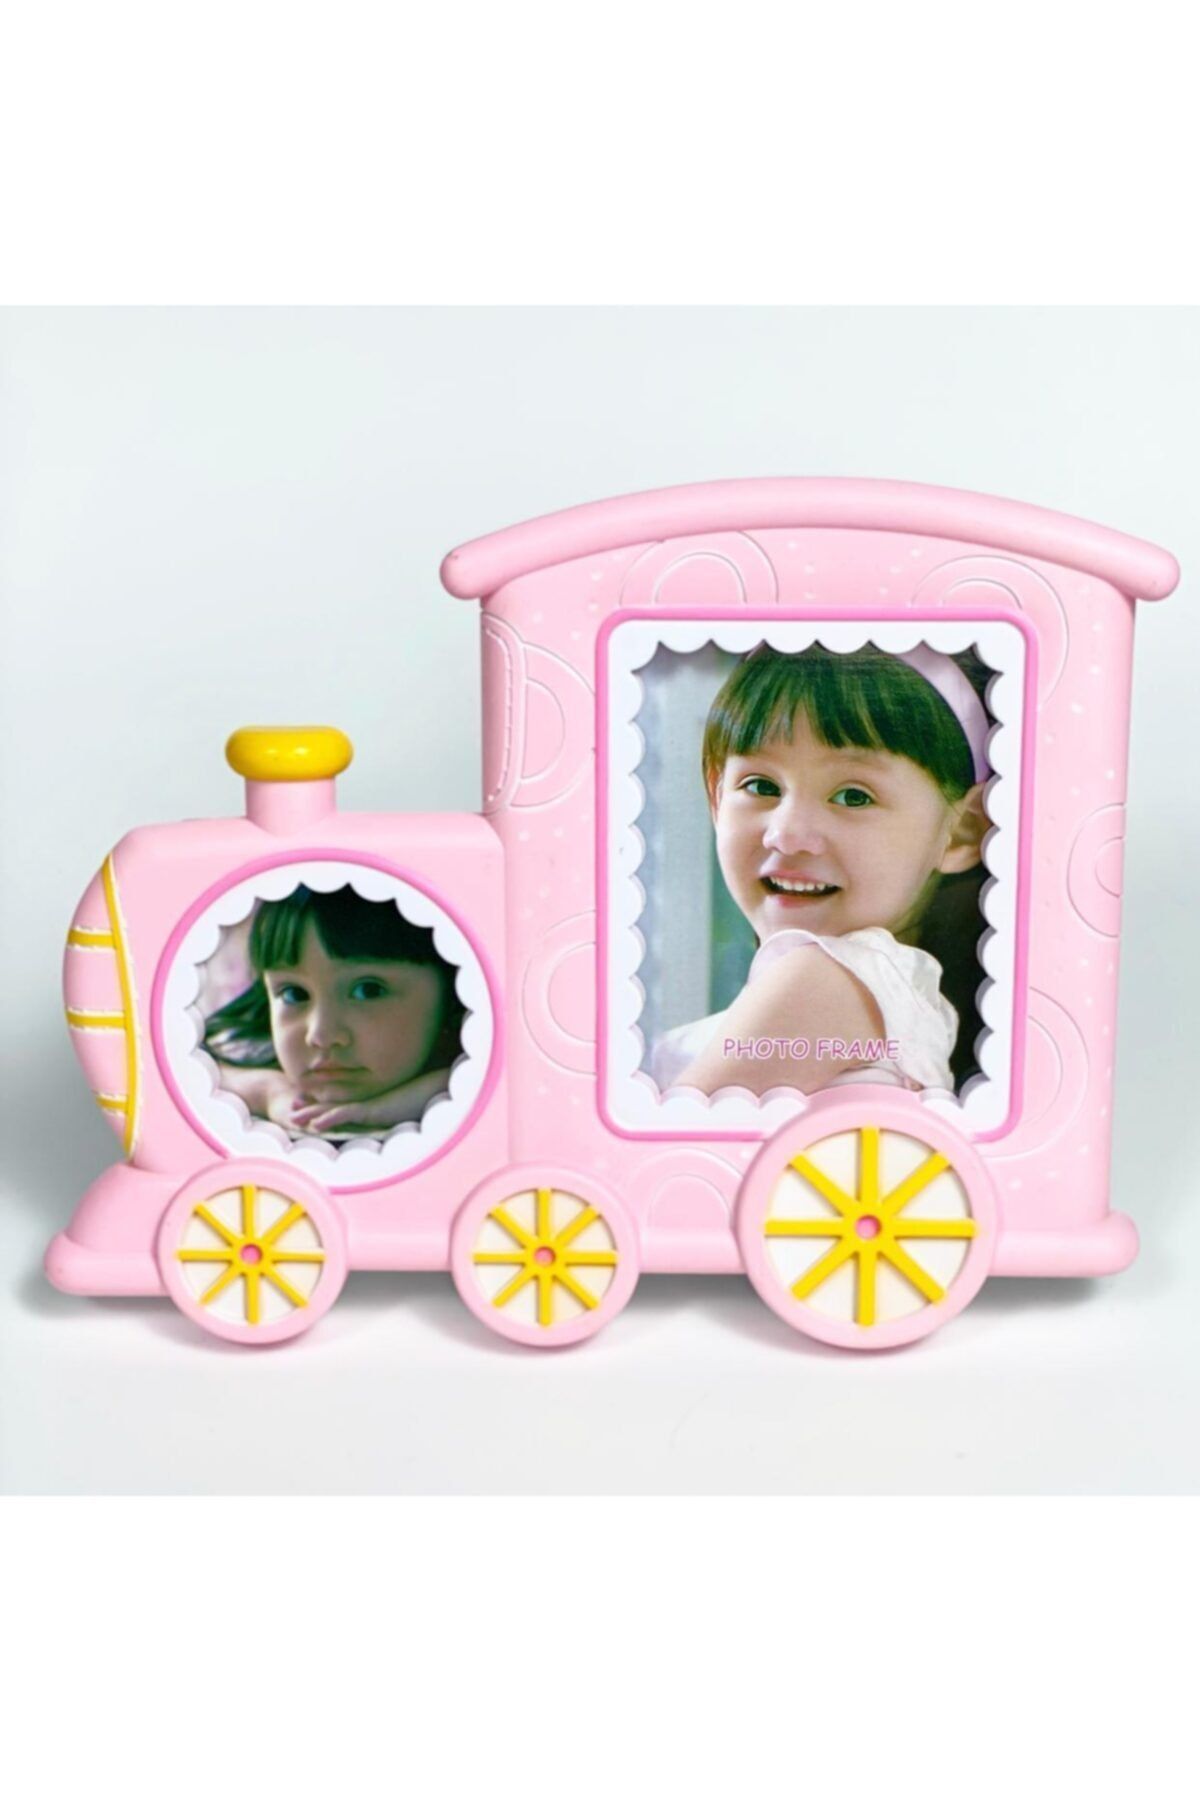 QUEEN AKSESUAR Şirin Pembe Bebek Çocuk Tren Ikili Ayaklı Fotoğraf Çerçevesi Hediyelik Albüm Frame